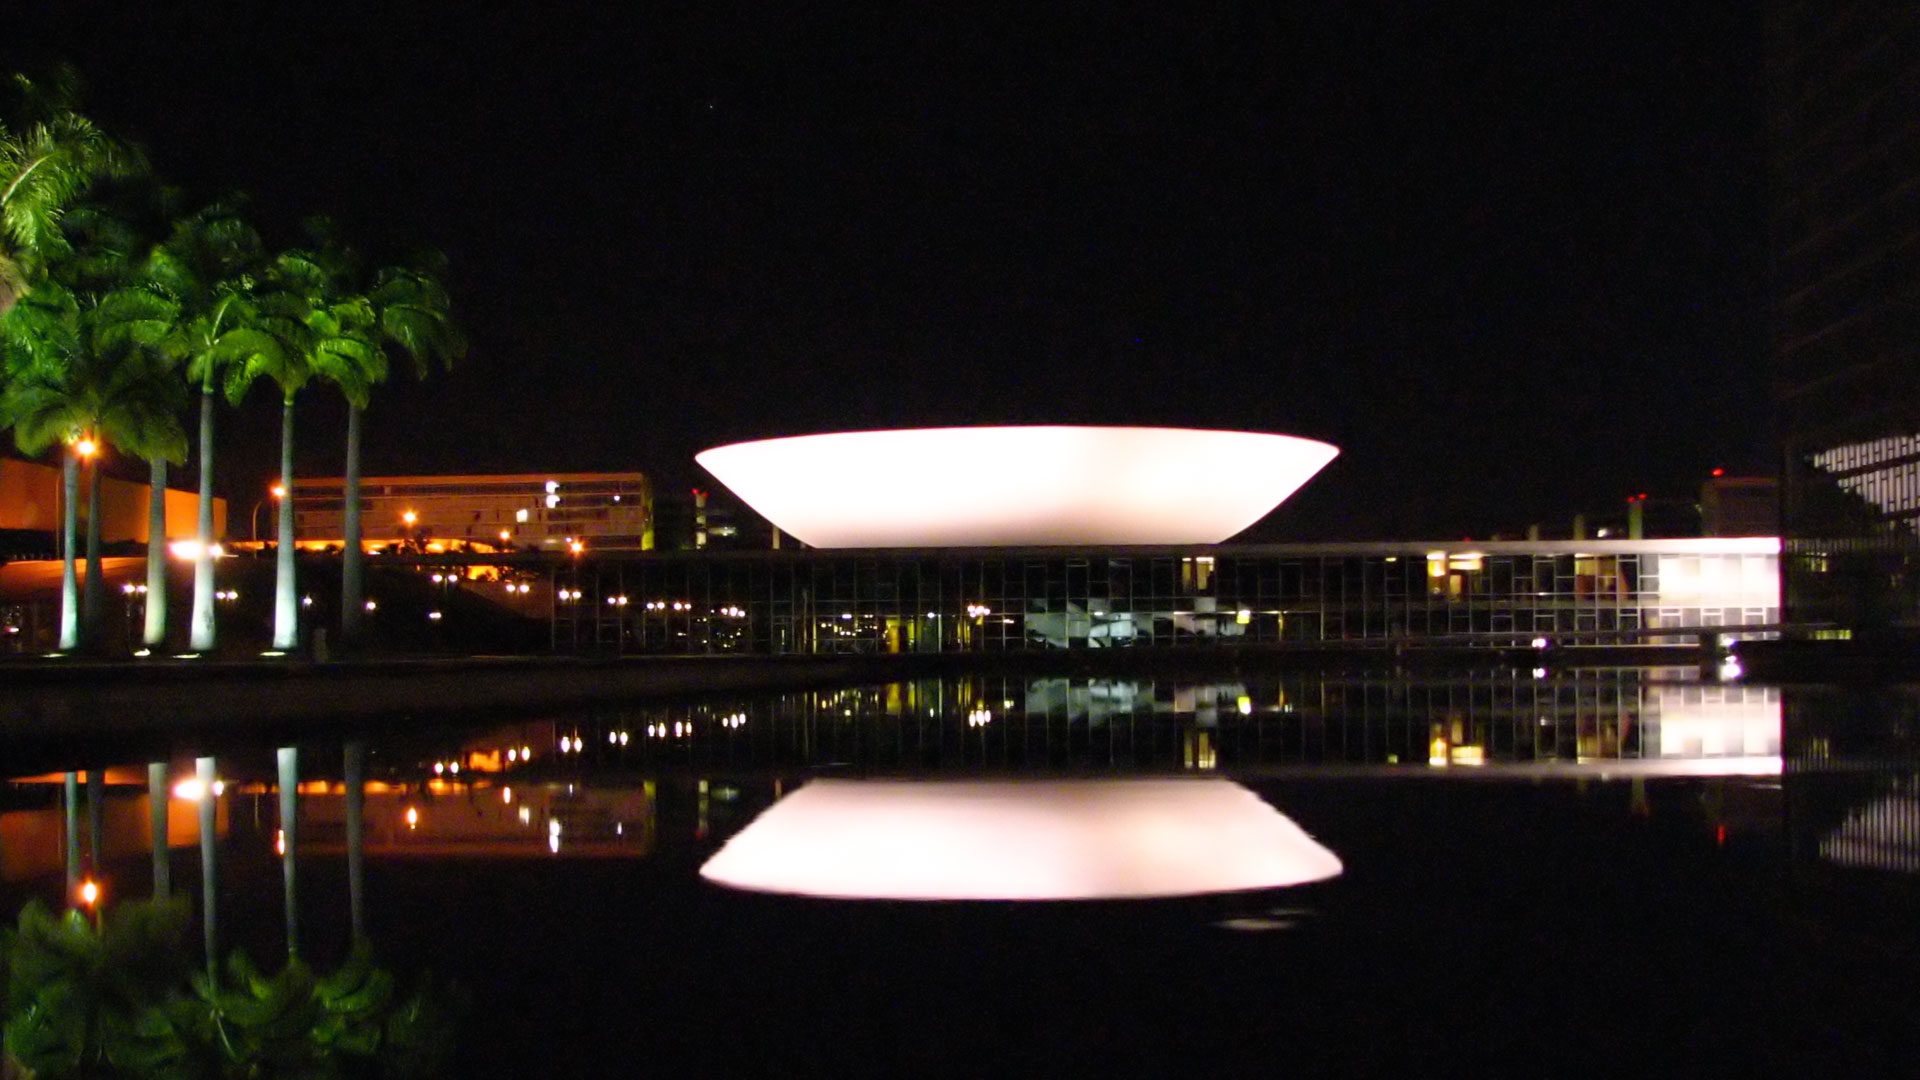 Le congrès national du Brésil de nuit